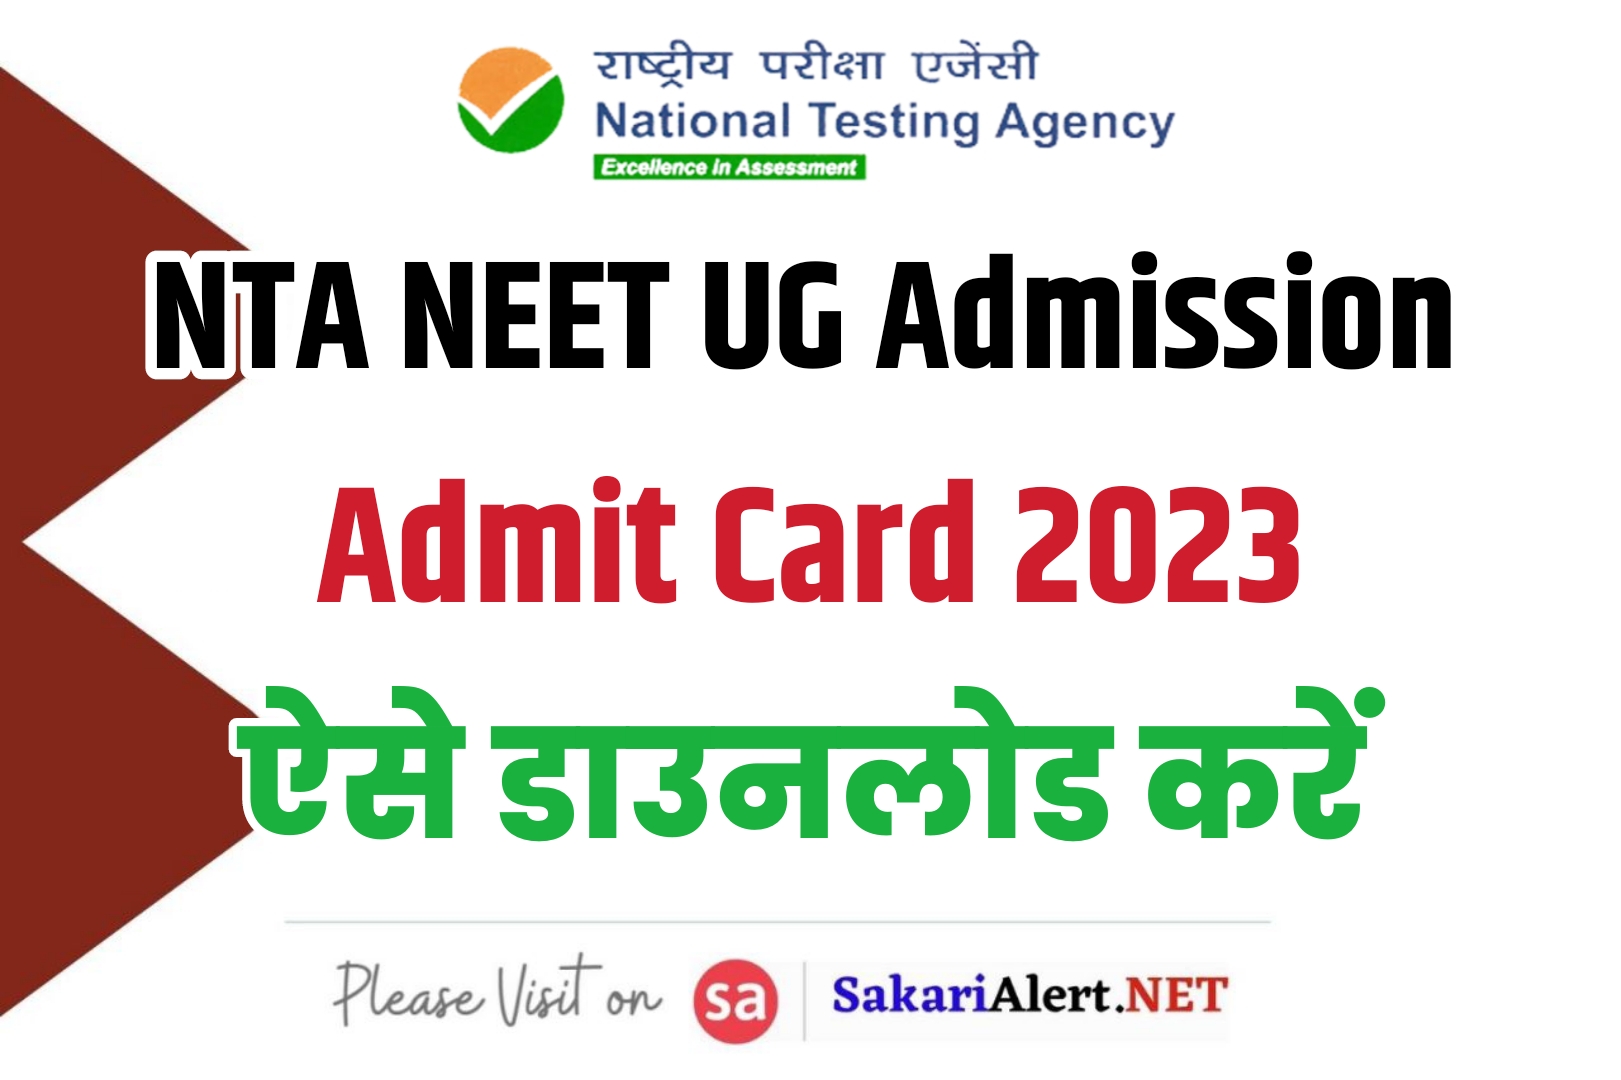 NTA NEET UG Admission Admit Card 2023 